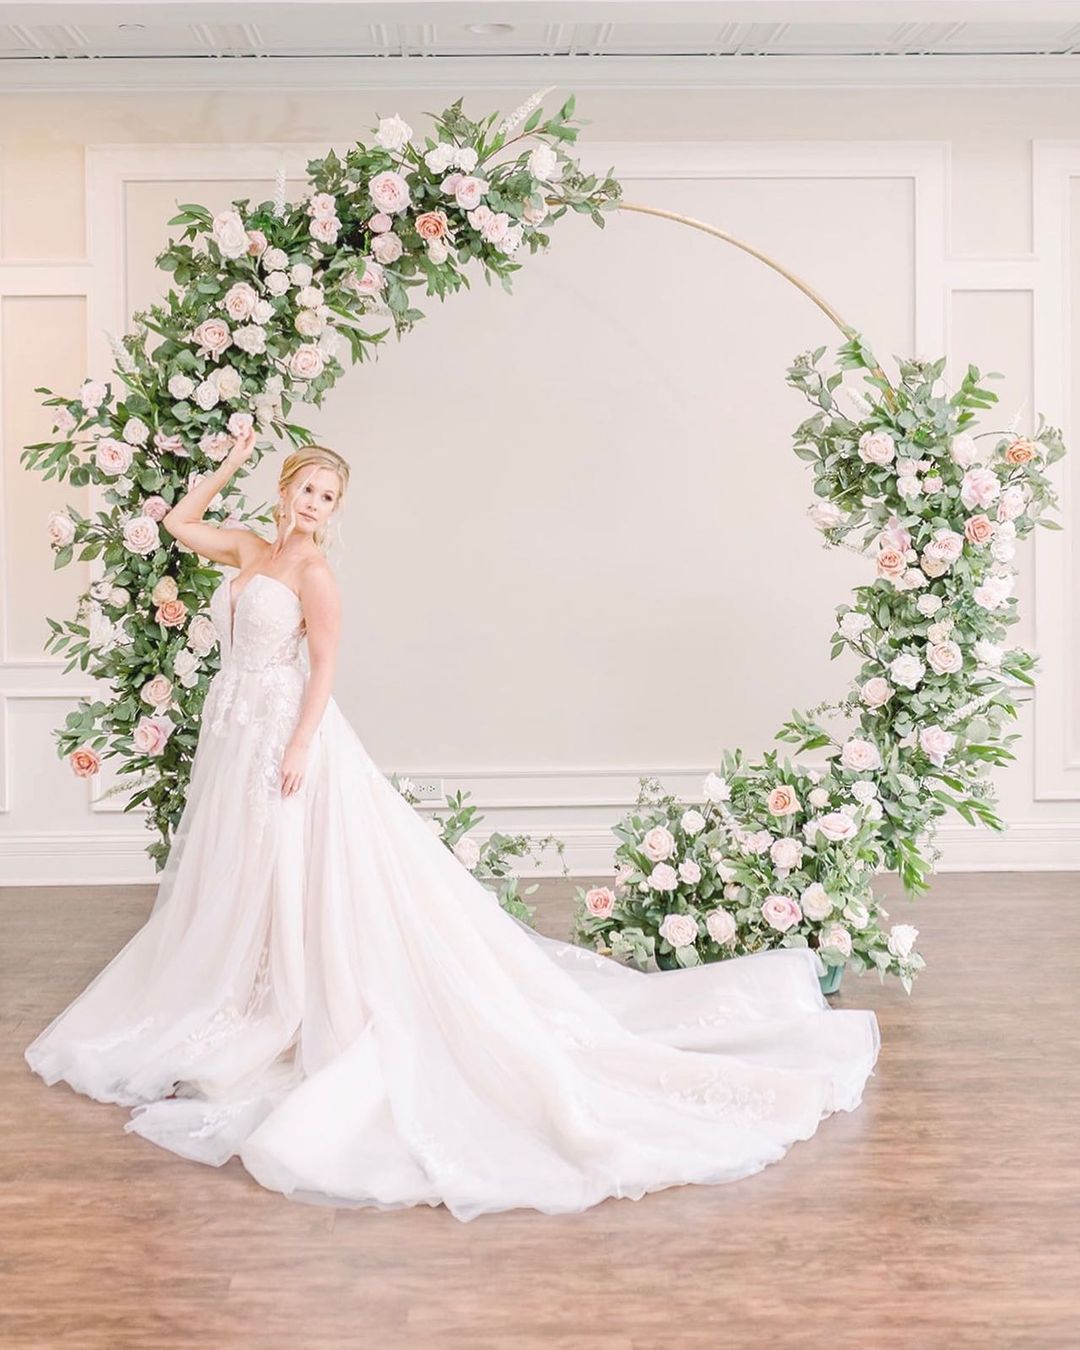 Circle wedding arch